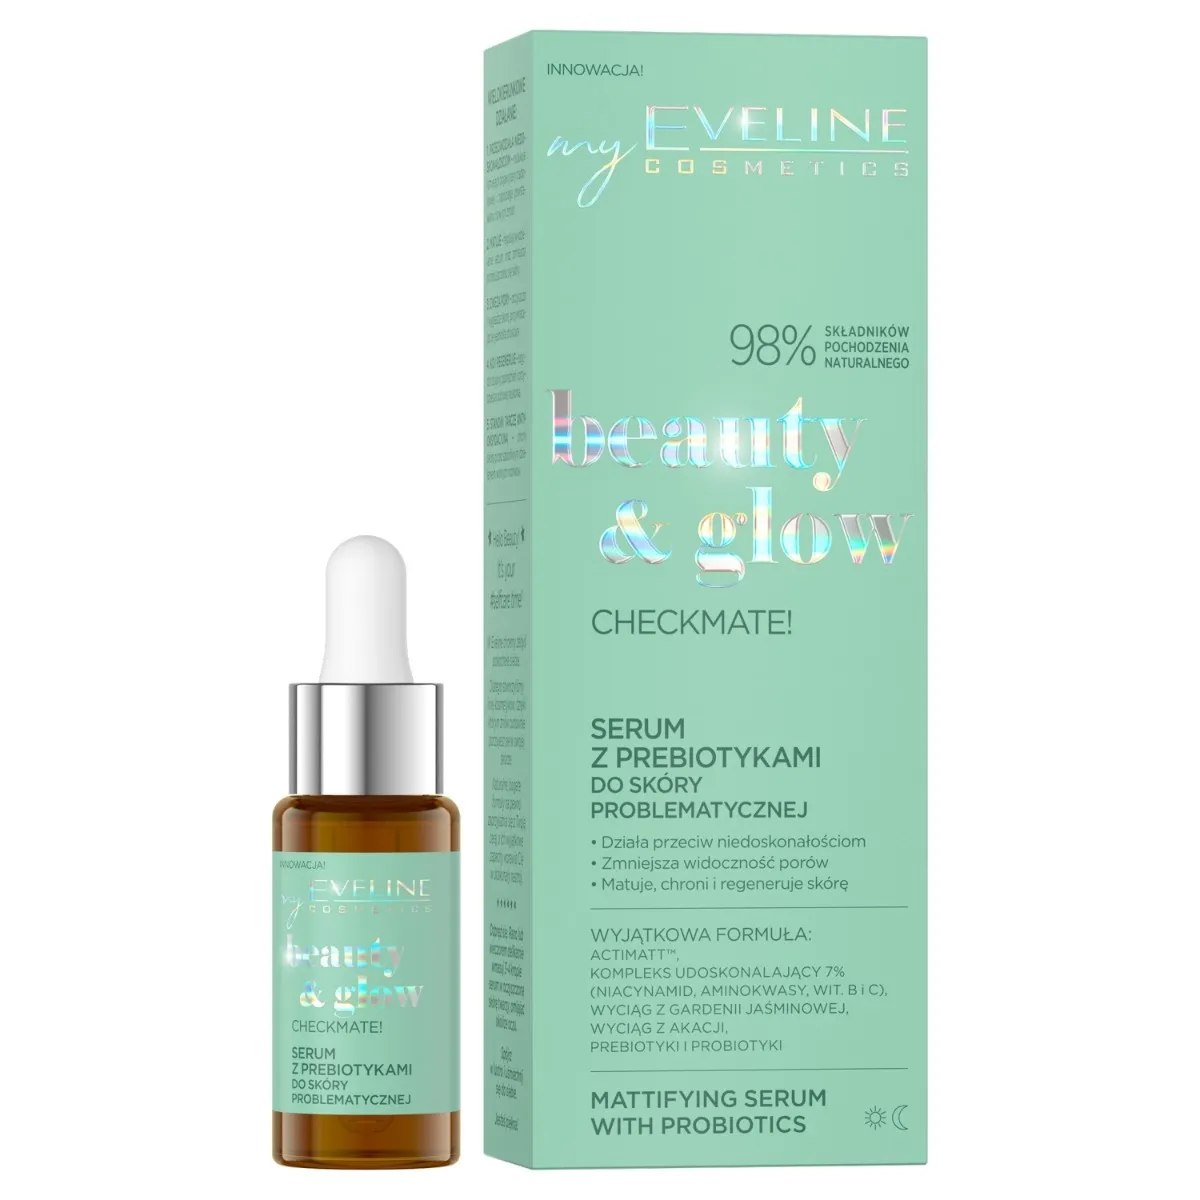 Eveline Cosmetics Beauty & Glow Checkmate! serum z prebiotykami do skóry problematycznej, 18 ml